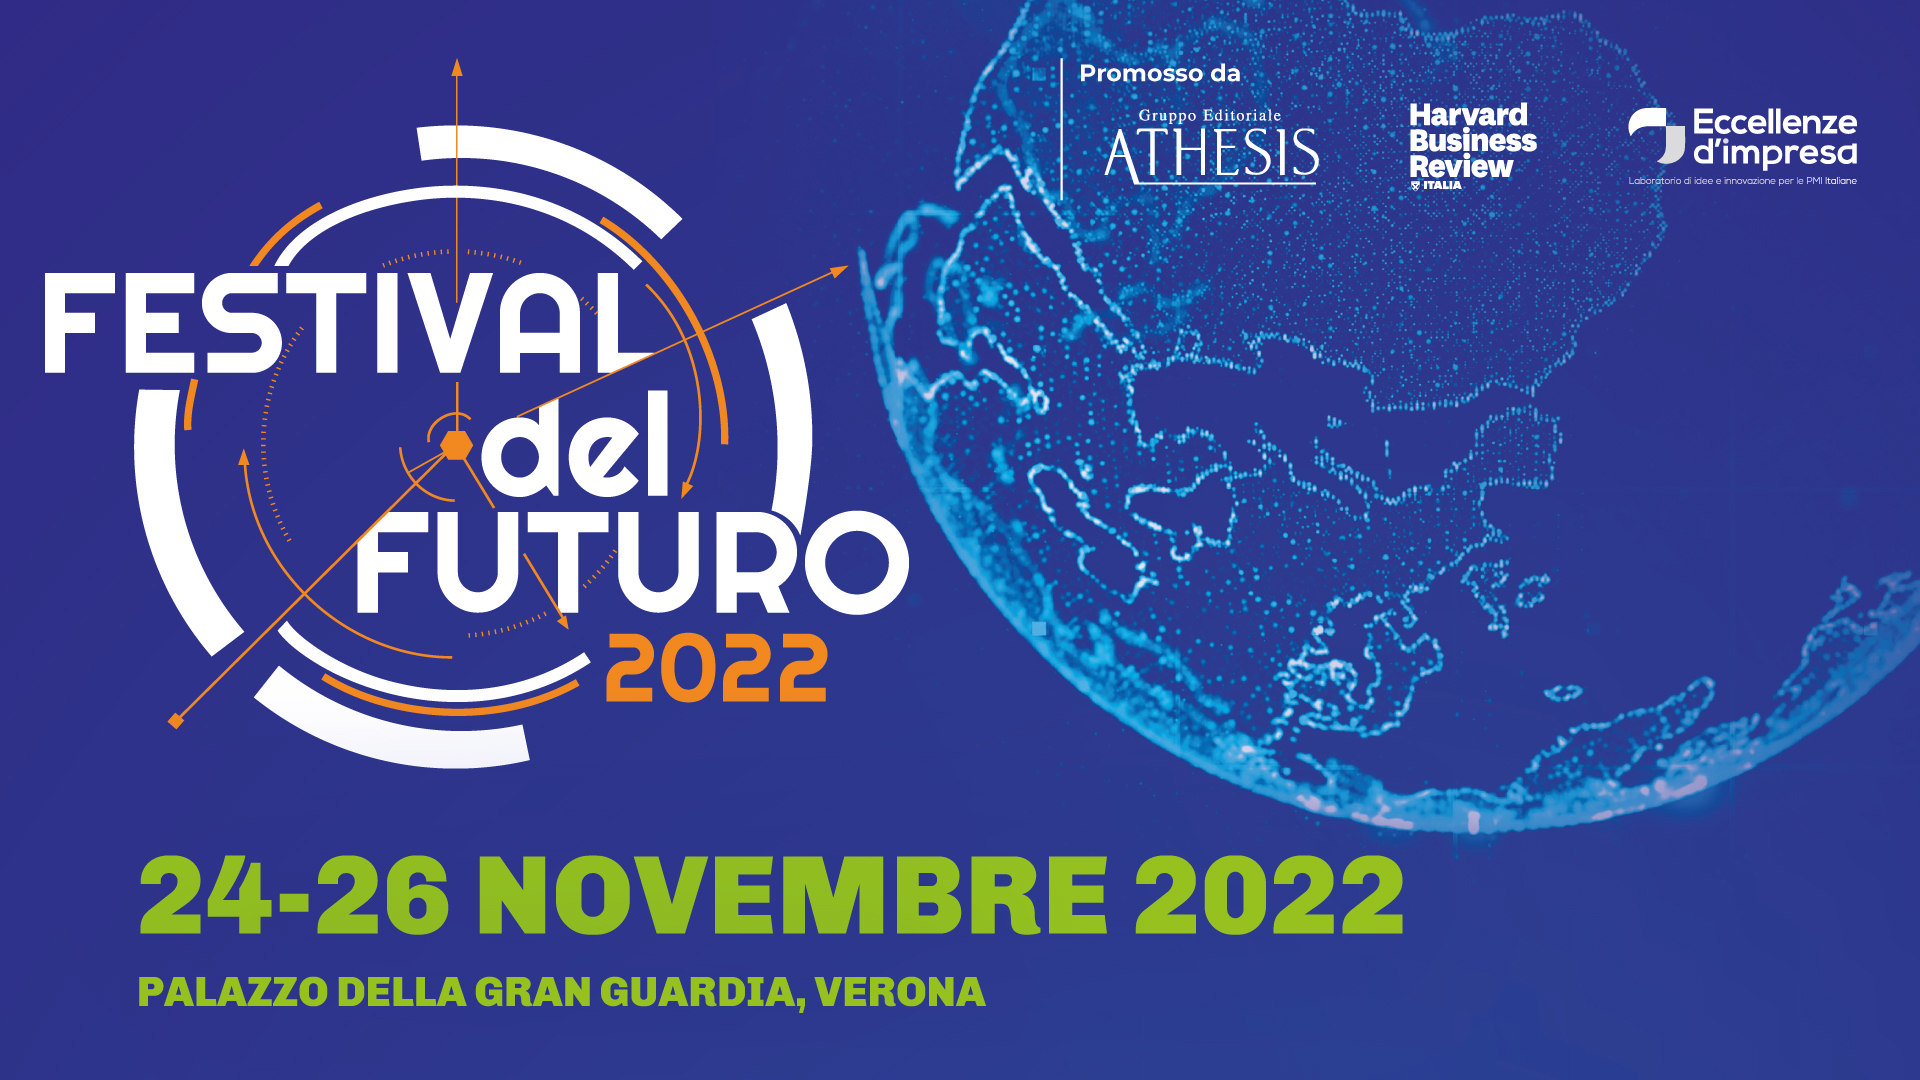 Festival del Futuro 2022: 3 giorni di previsioni, confronti e dibattiti a 360° - dal 24 al 26 novembre in Gran Guardia a Verona